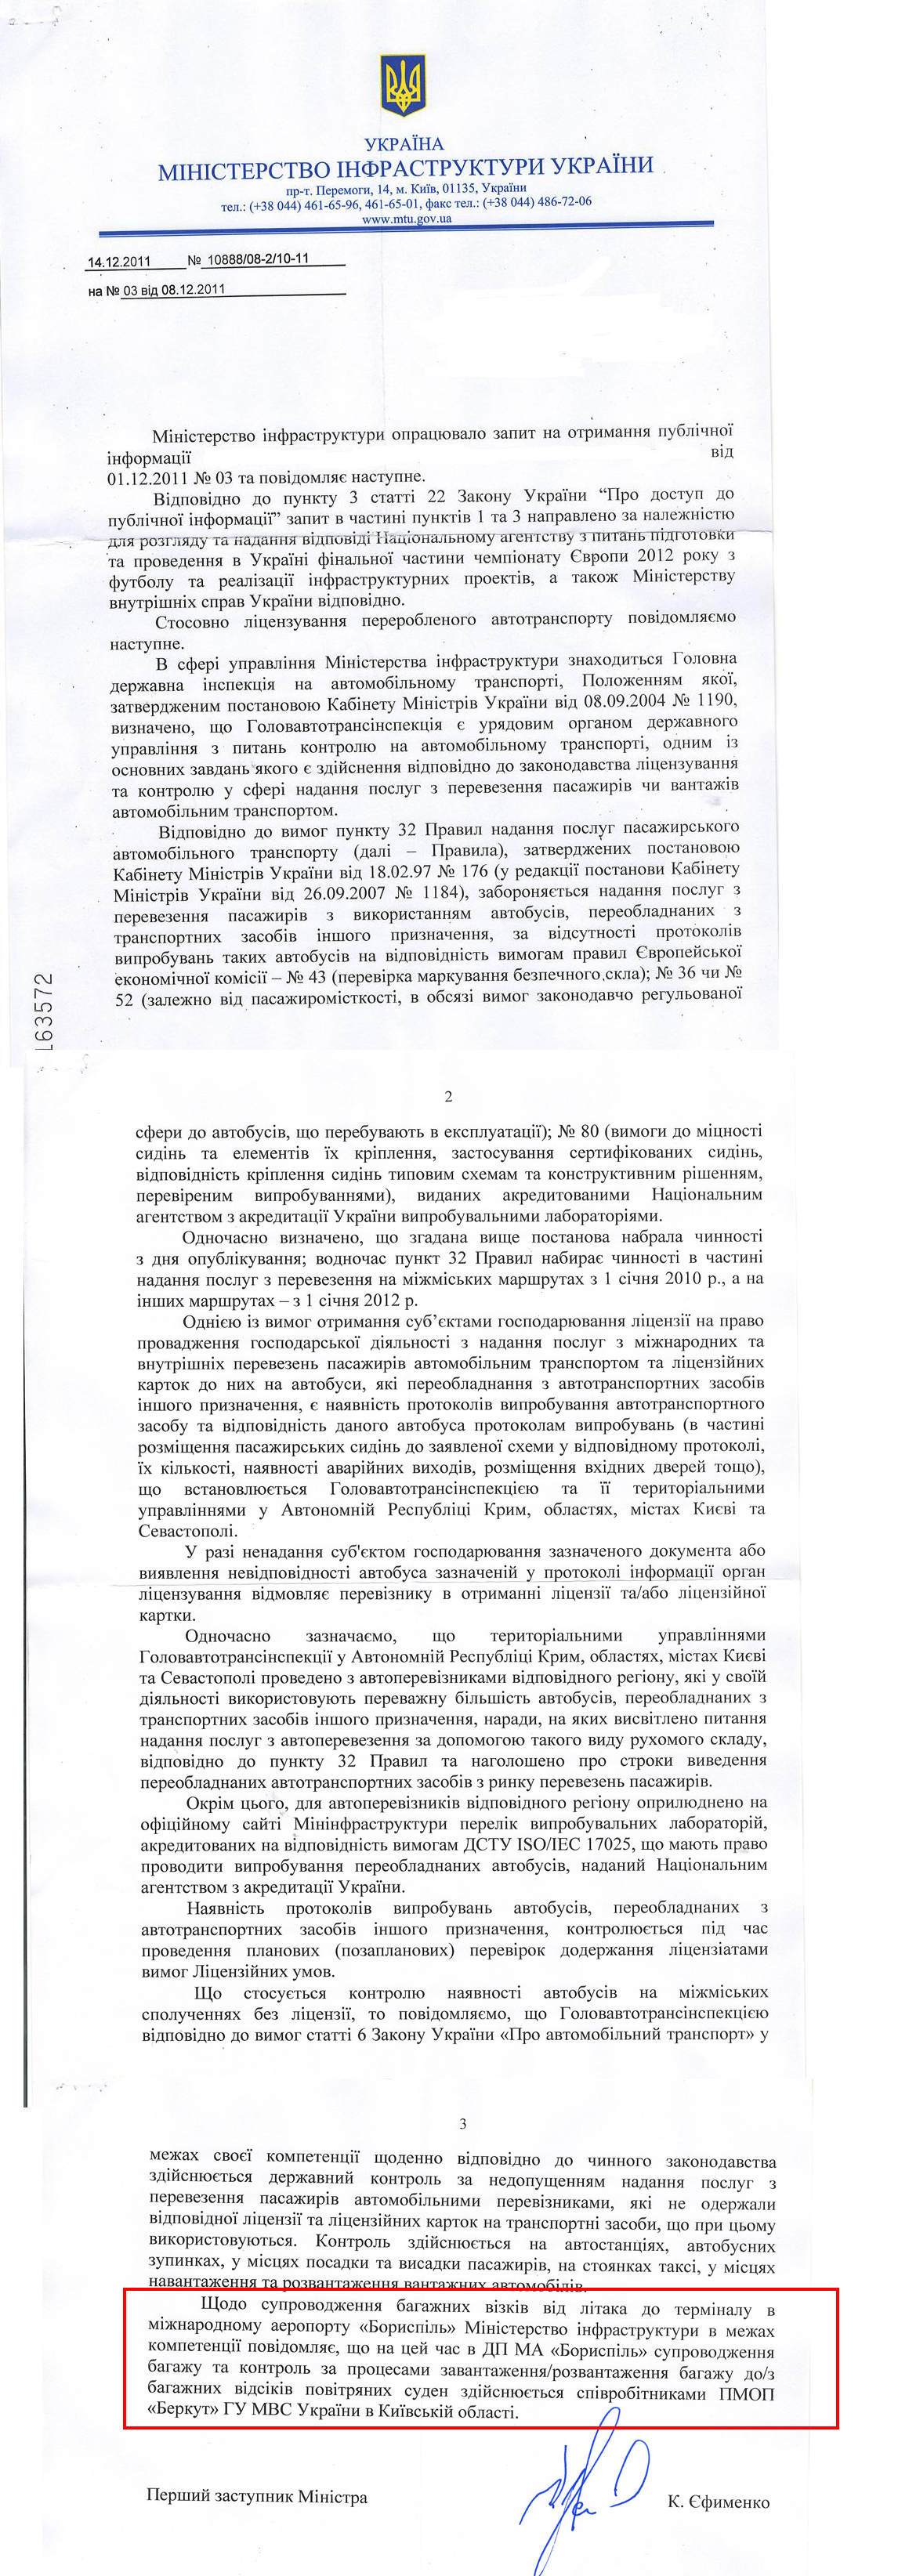 Письмо Первого заместителя Министра инфраструктуры Украины К. Ефименко